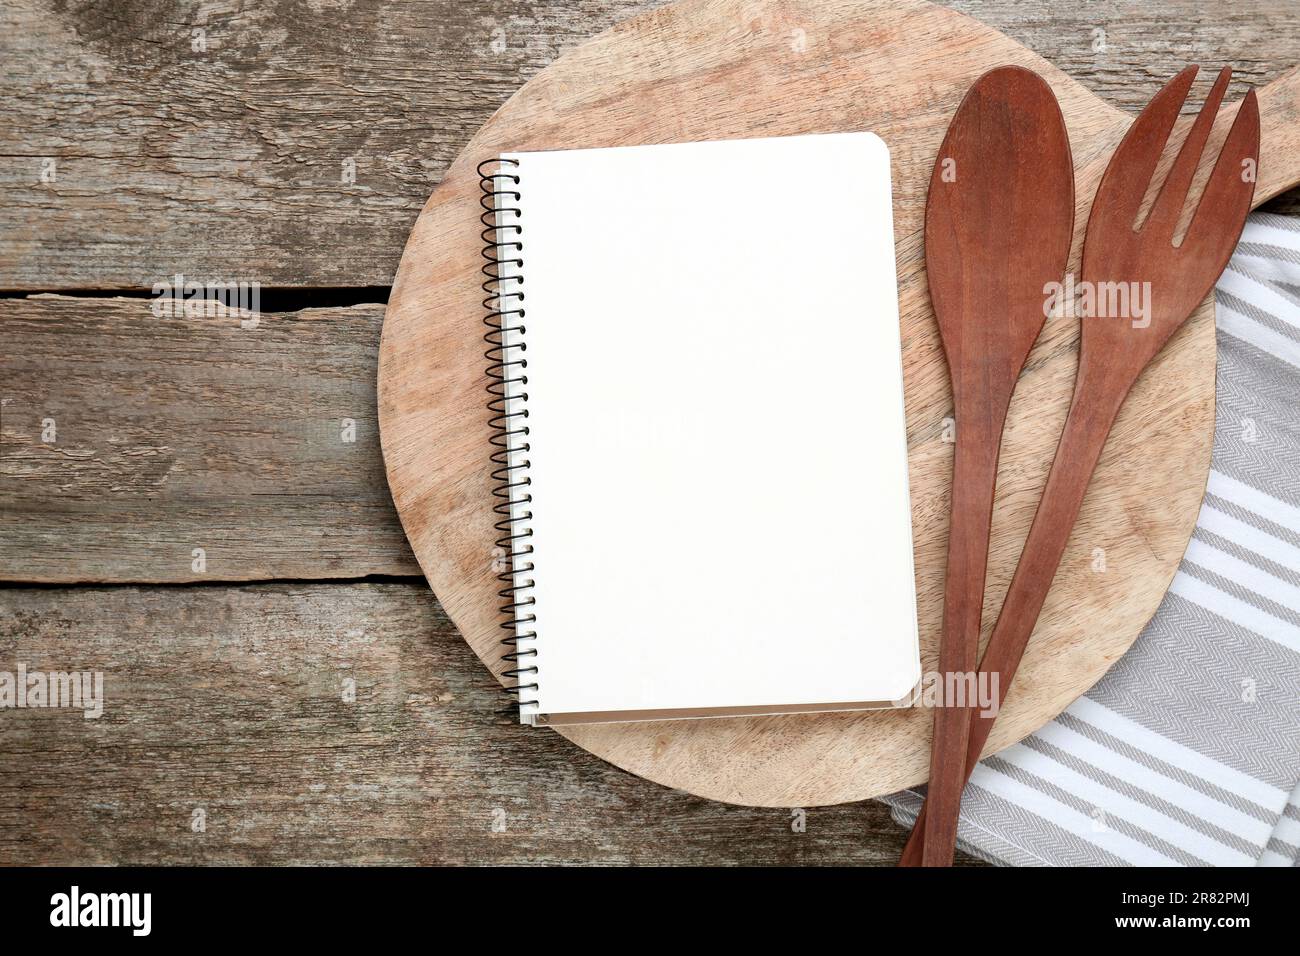 Libro de recetas en blanco y utensilios de cocina en la vieja mesa